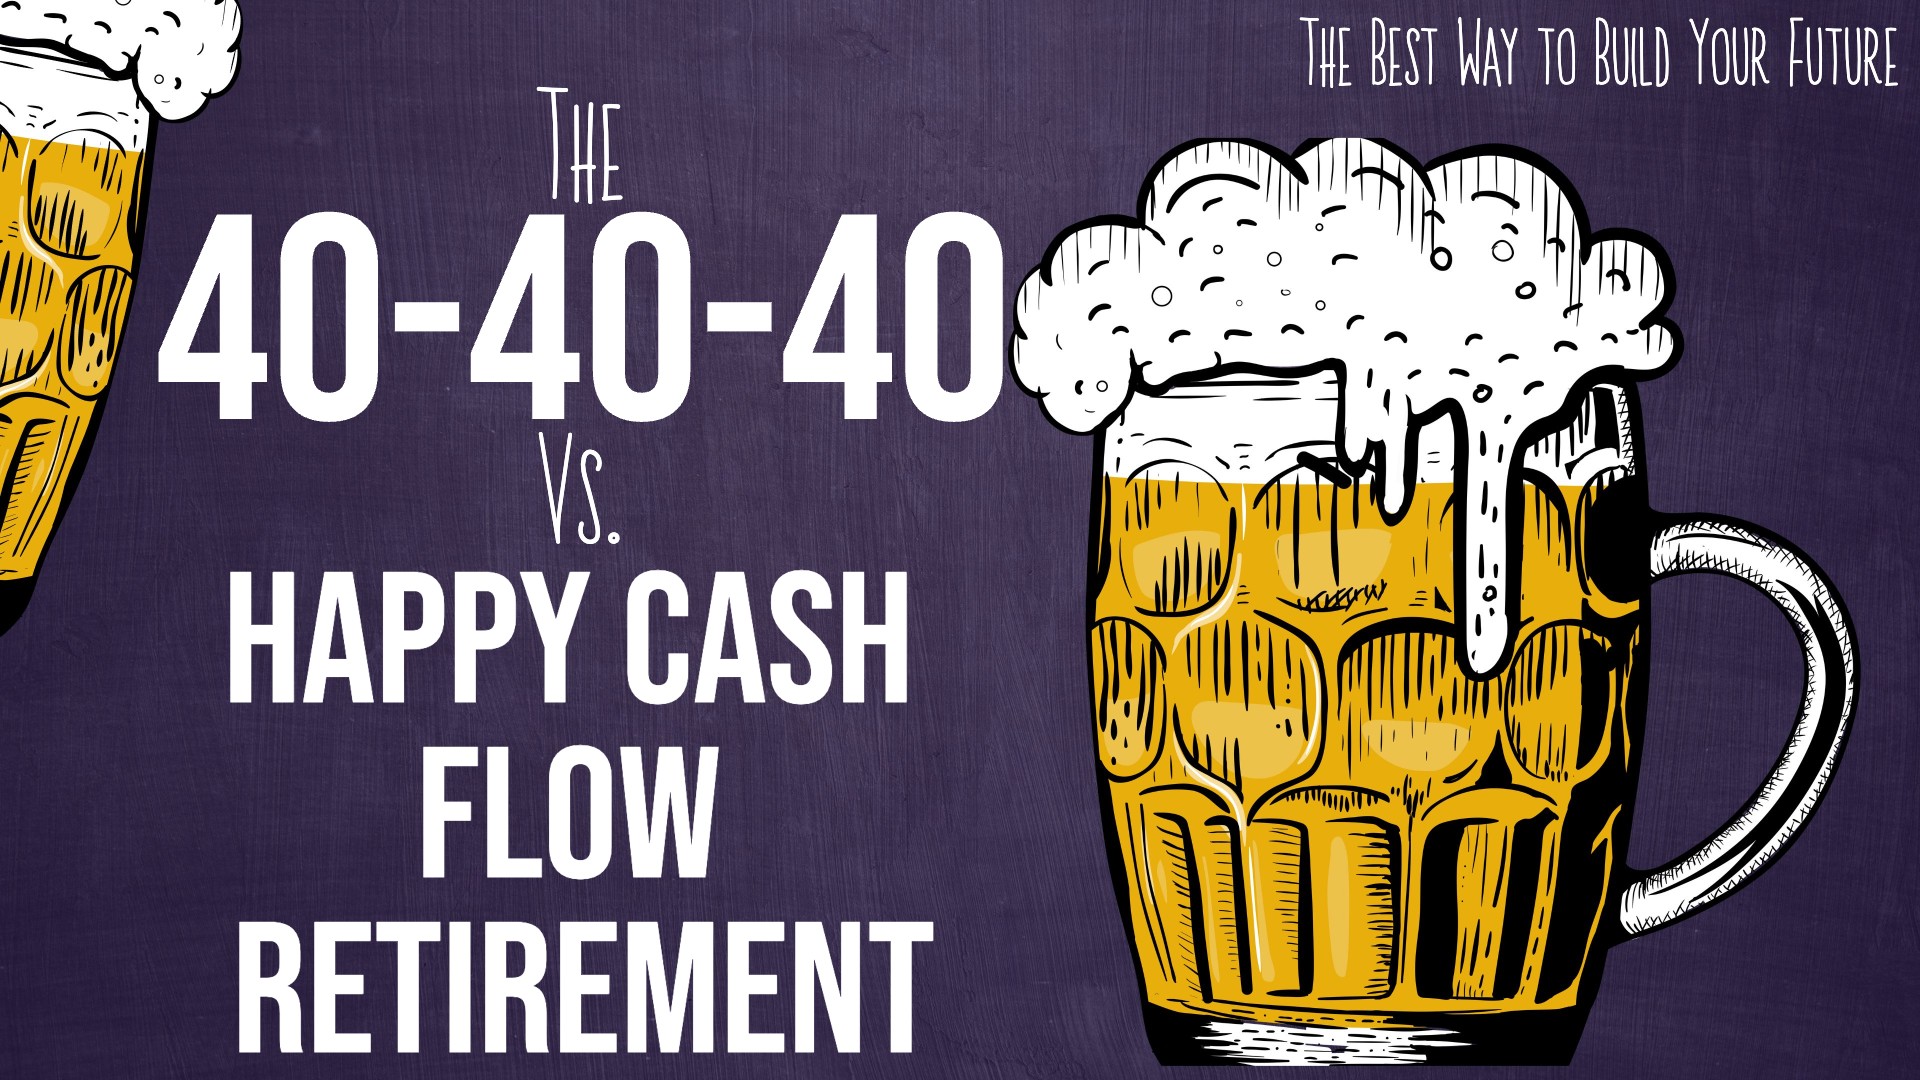 The 40-40-40 Plan vs. Happy Cash Flow Retirement